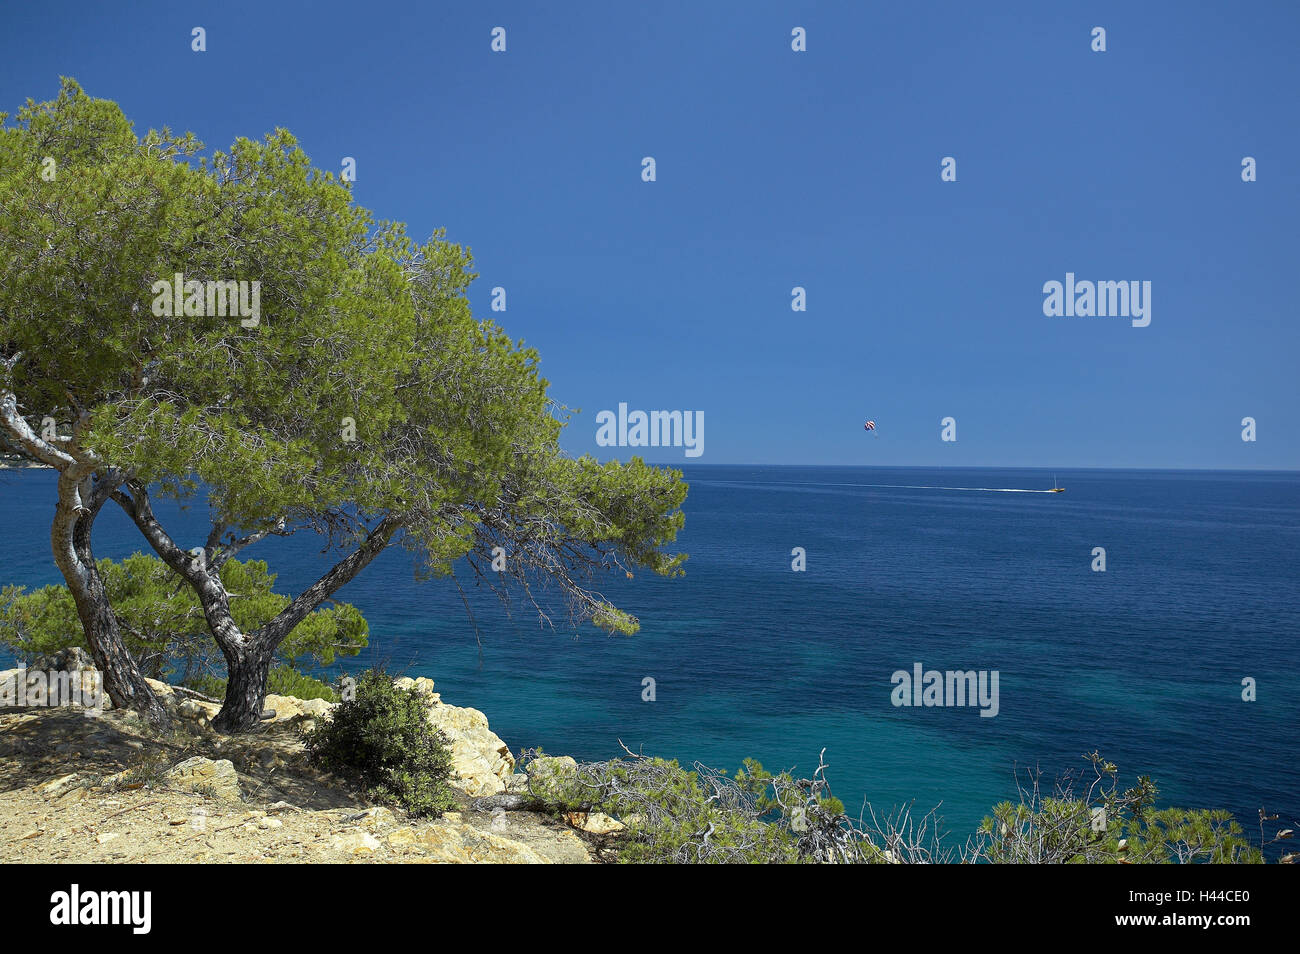 France, Cote d'Azur, pest de la Fossette, sea, boat, Parasailer, Stock Photo